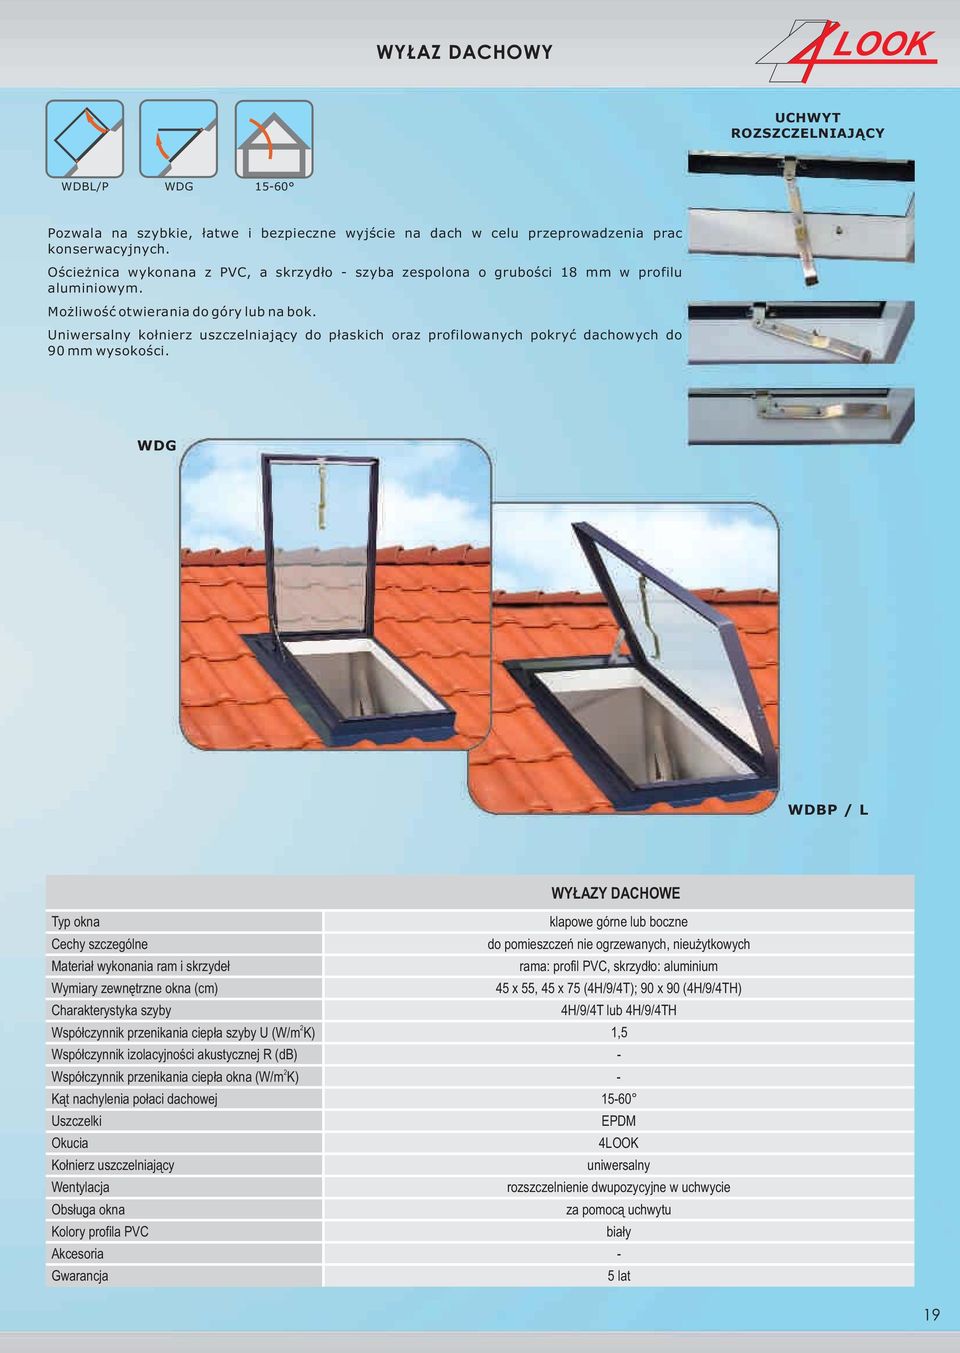 Uniwersalny ko³nierz uszczelniaj¹cy do p³askich oraz profilowanych pokryæ dachowych do 90 mm wysokoœci.